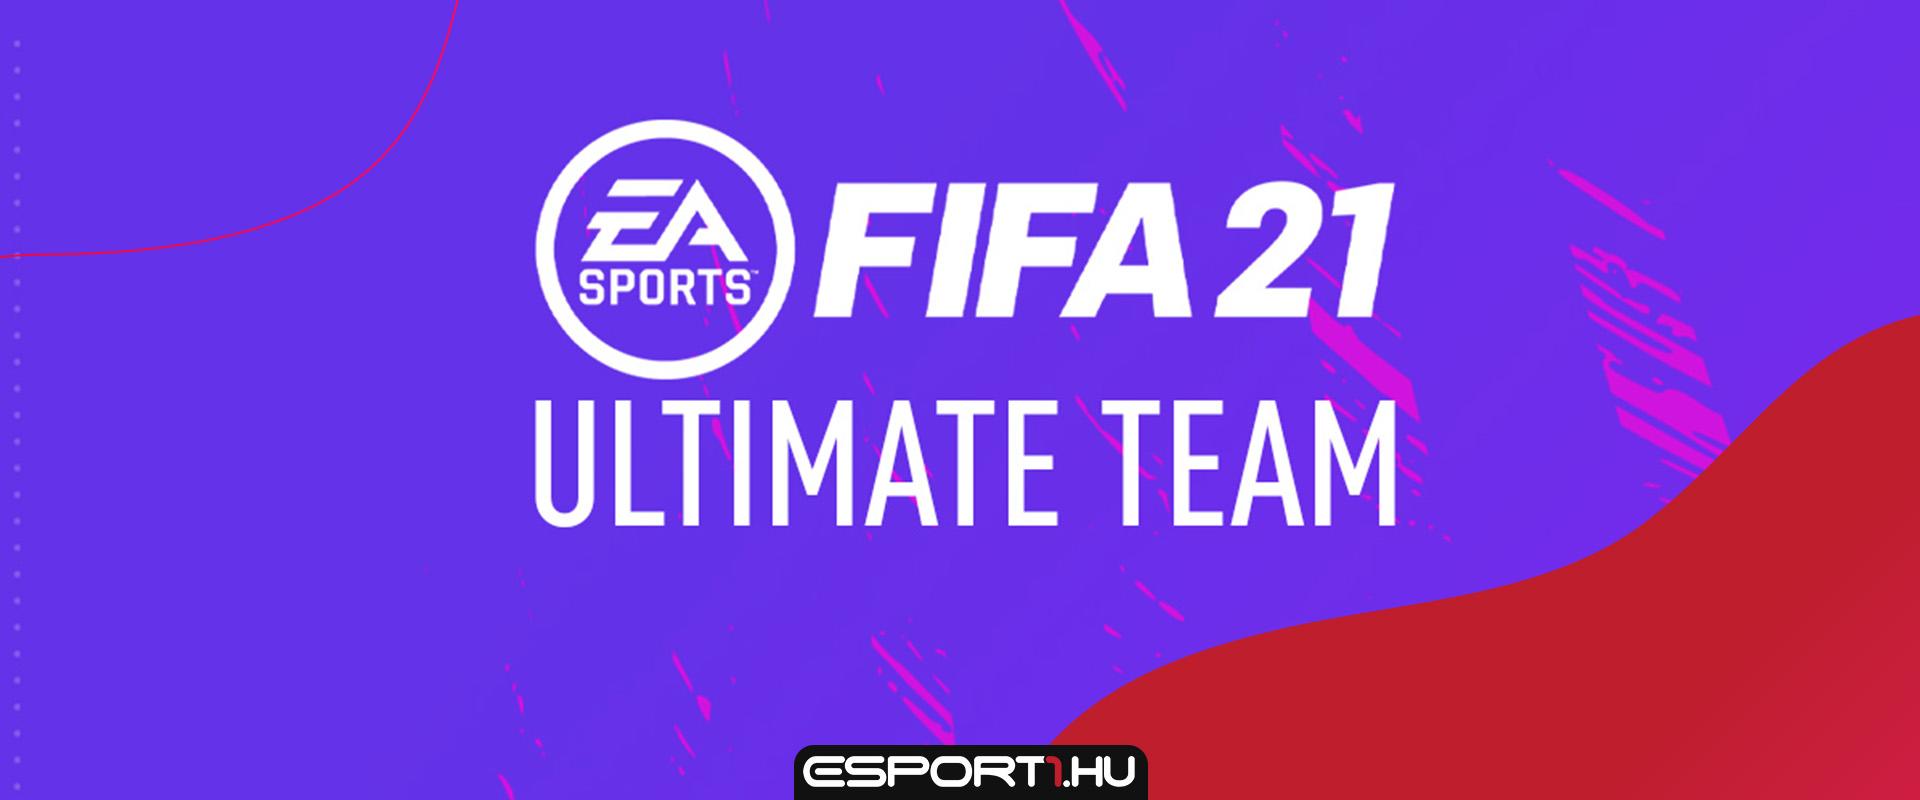 Ennyit keres percenként az EA Sports a FIFA 21 Ultimate Team módjával